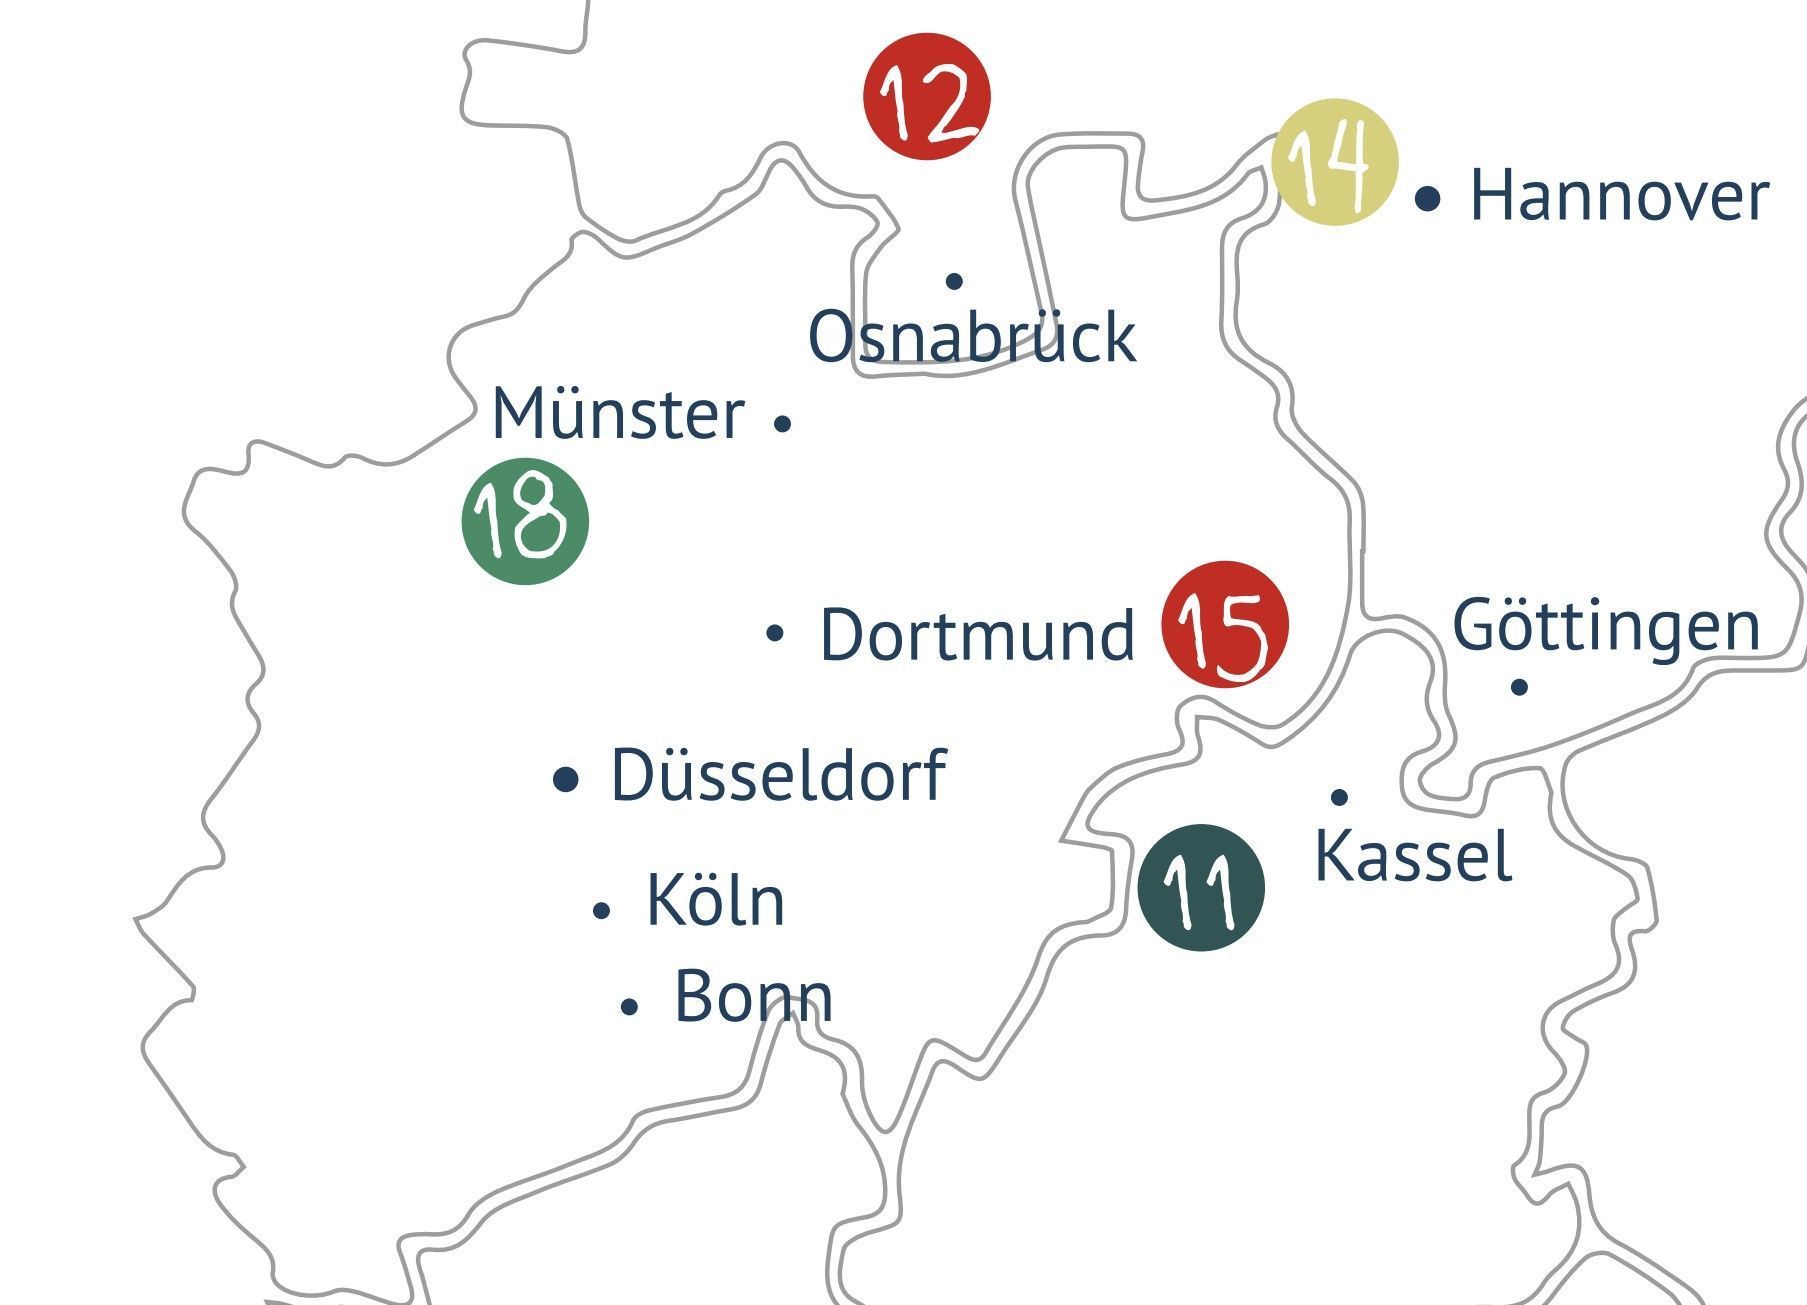 Eine Karte von Deutschland mit den Städten Münster, Osnabrück, Dortmund, Kassel und Hannover